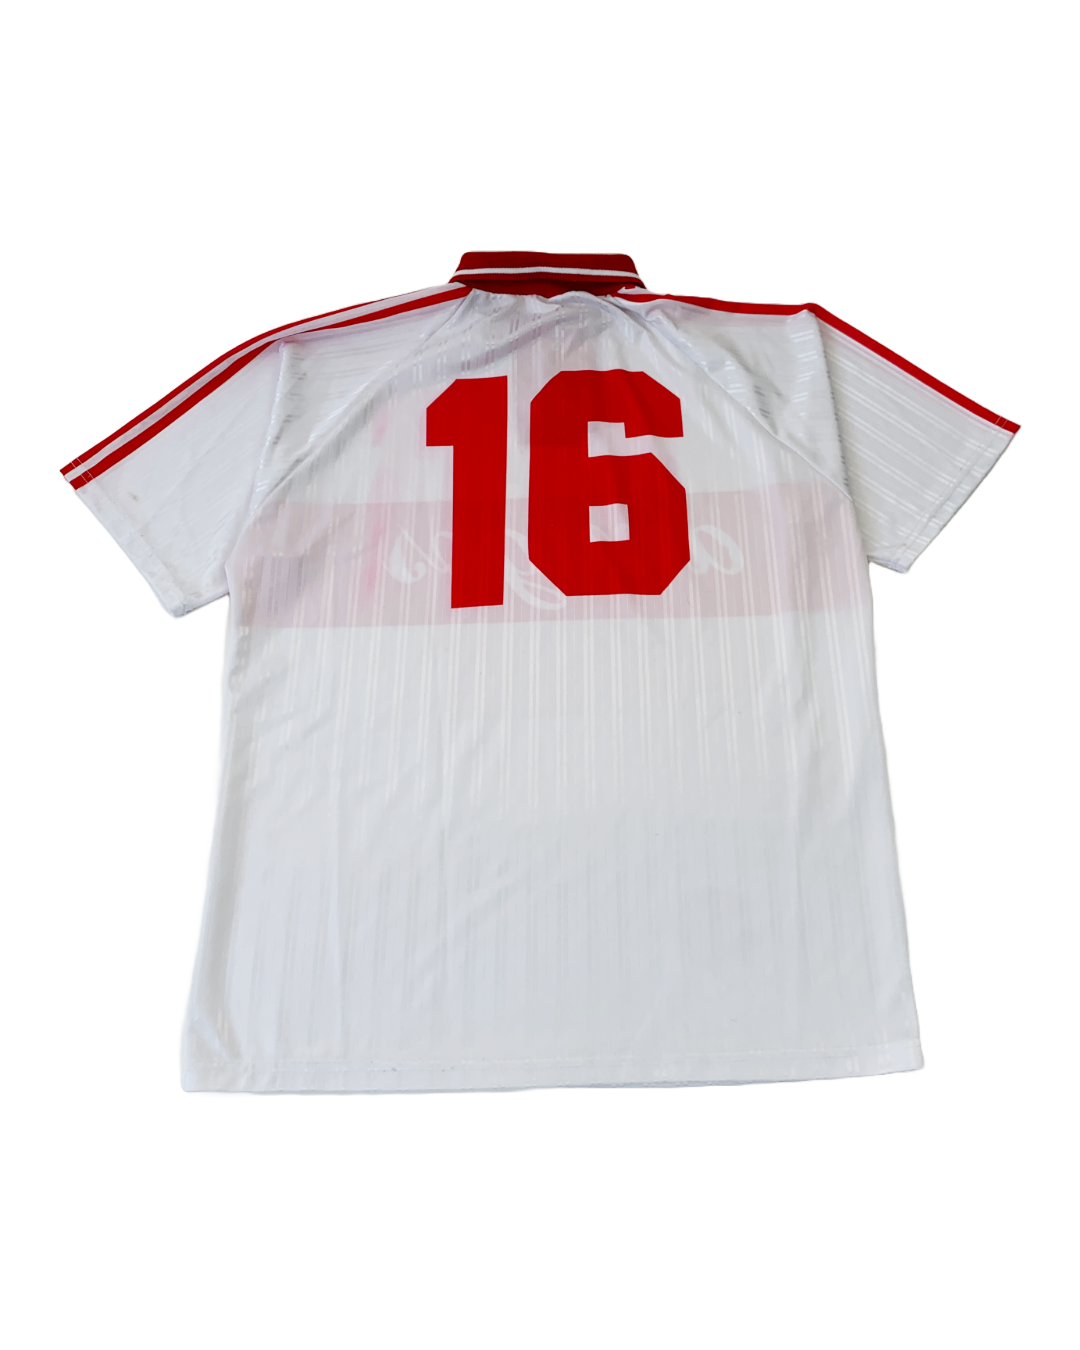 Jersey Amigo Soccer Vintage - XL